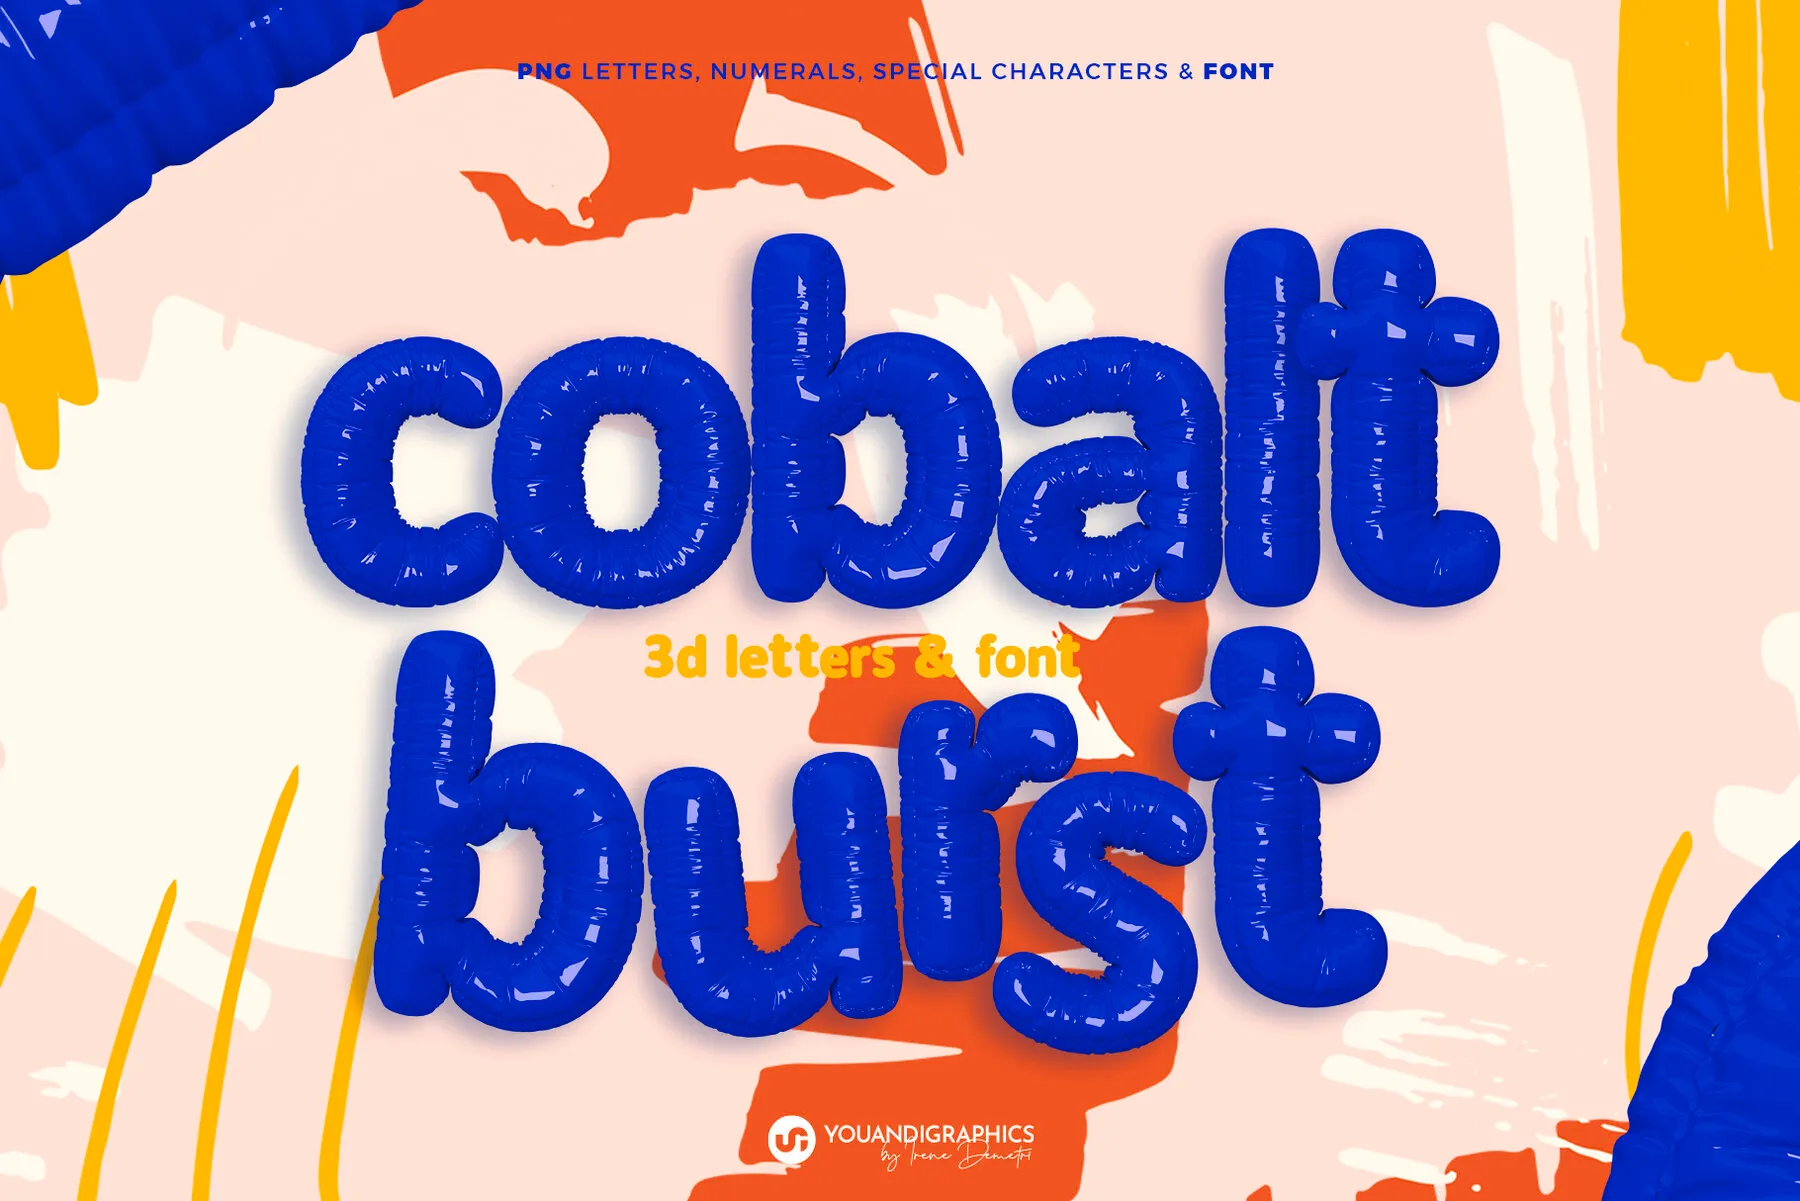 Cobalt Burst 3D Letters & Font